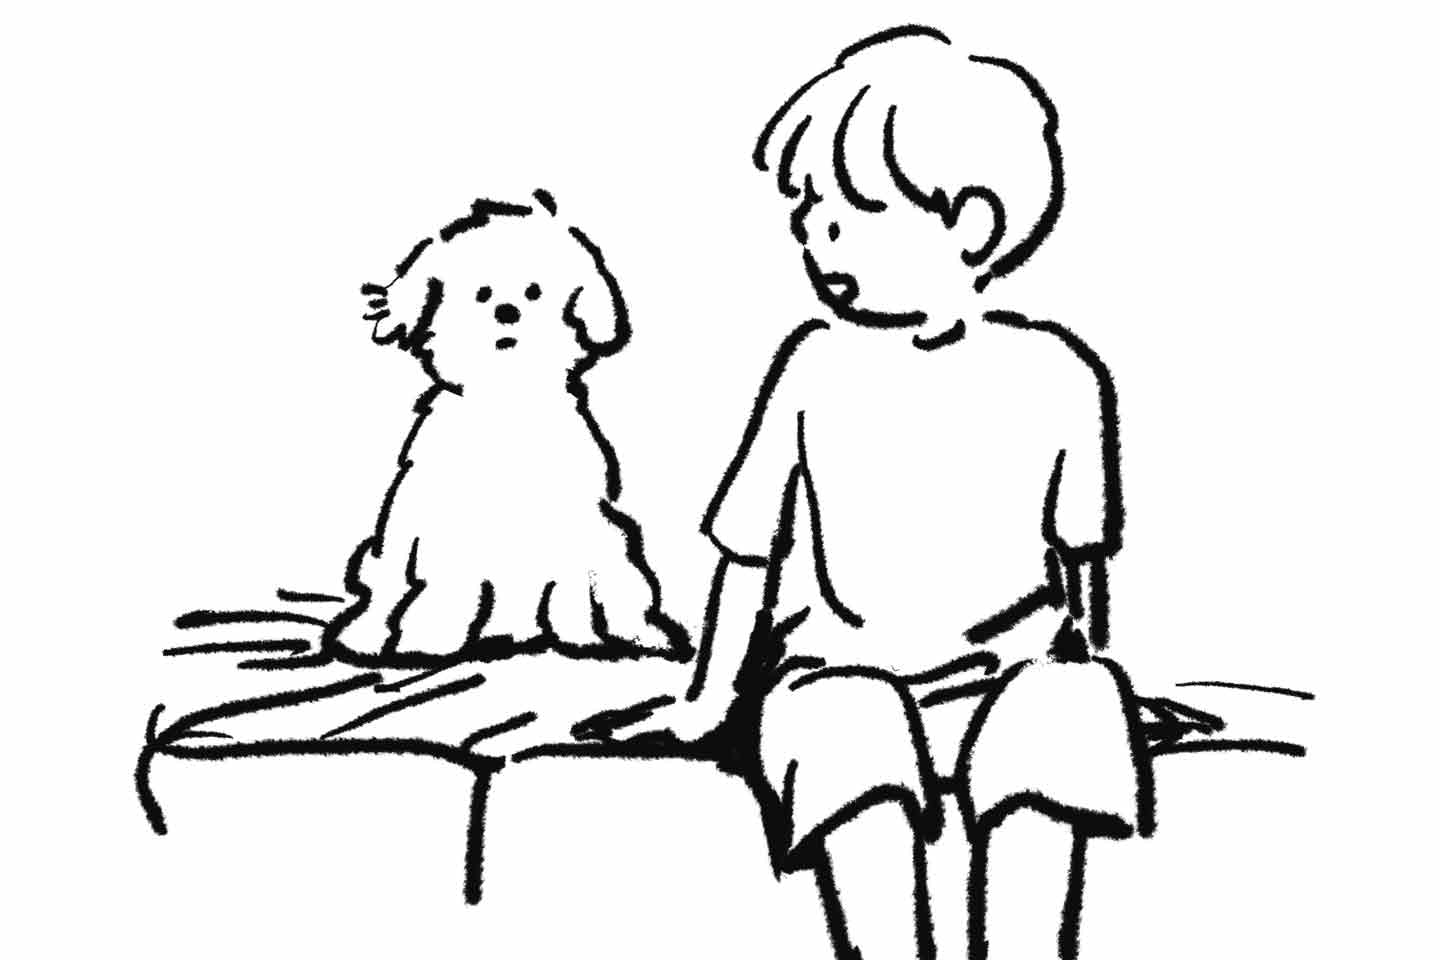 「リアルな愛を描きたい」“伴侶”犬・ムンゲくんをテーマに作品を描く韓国の作家yeyeさん